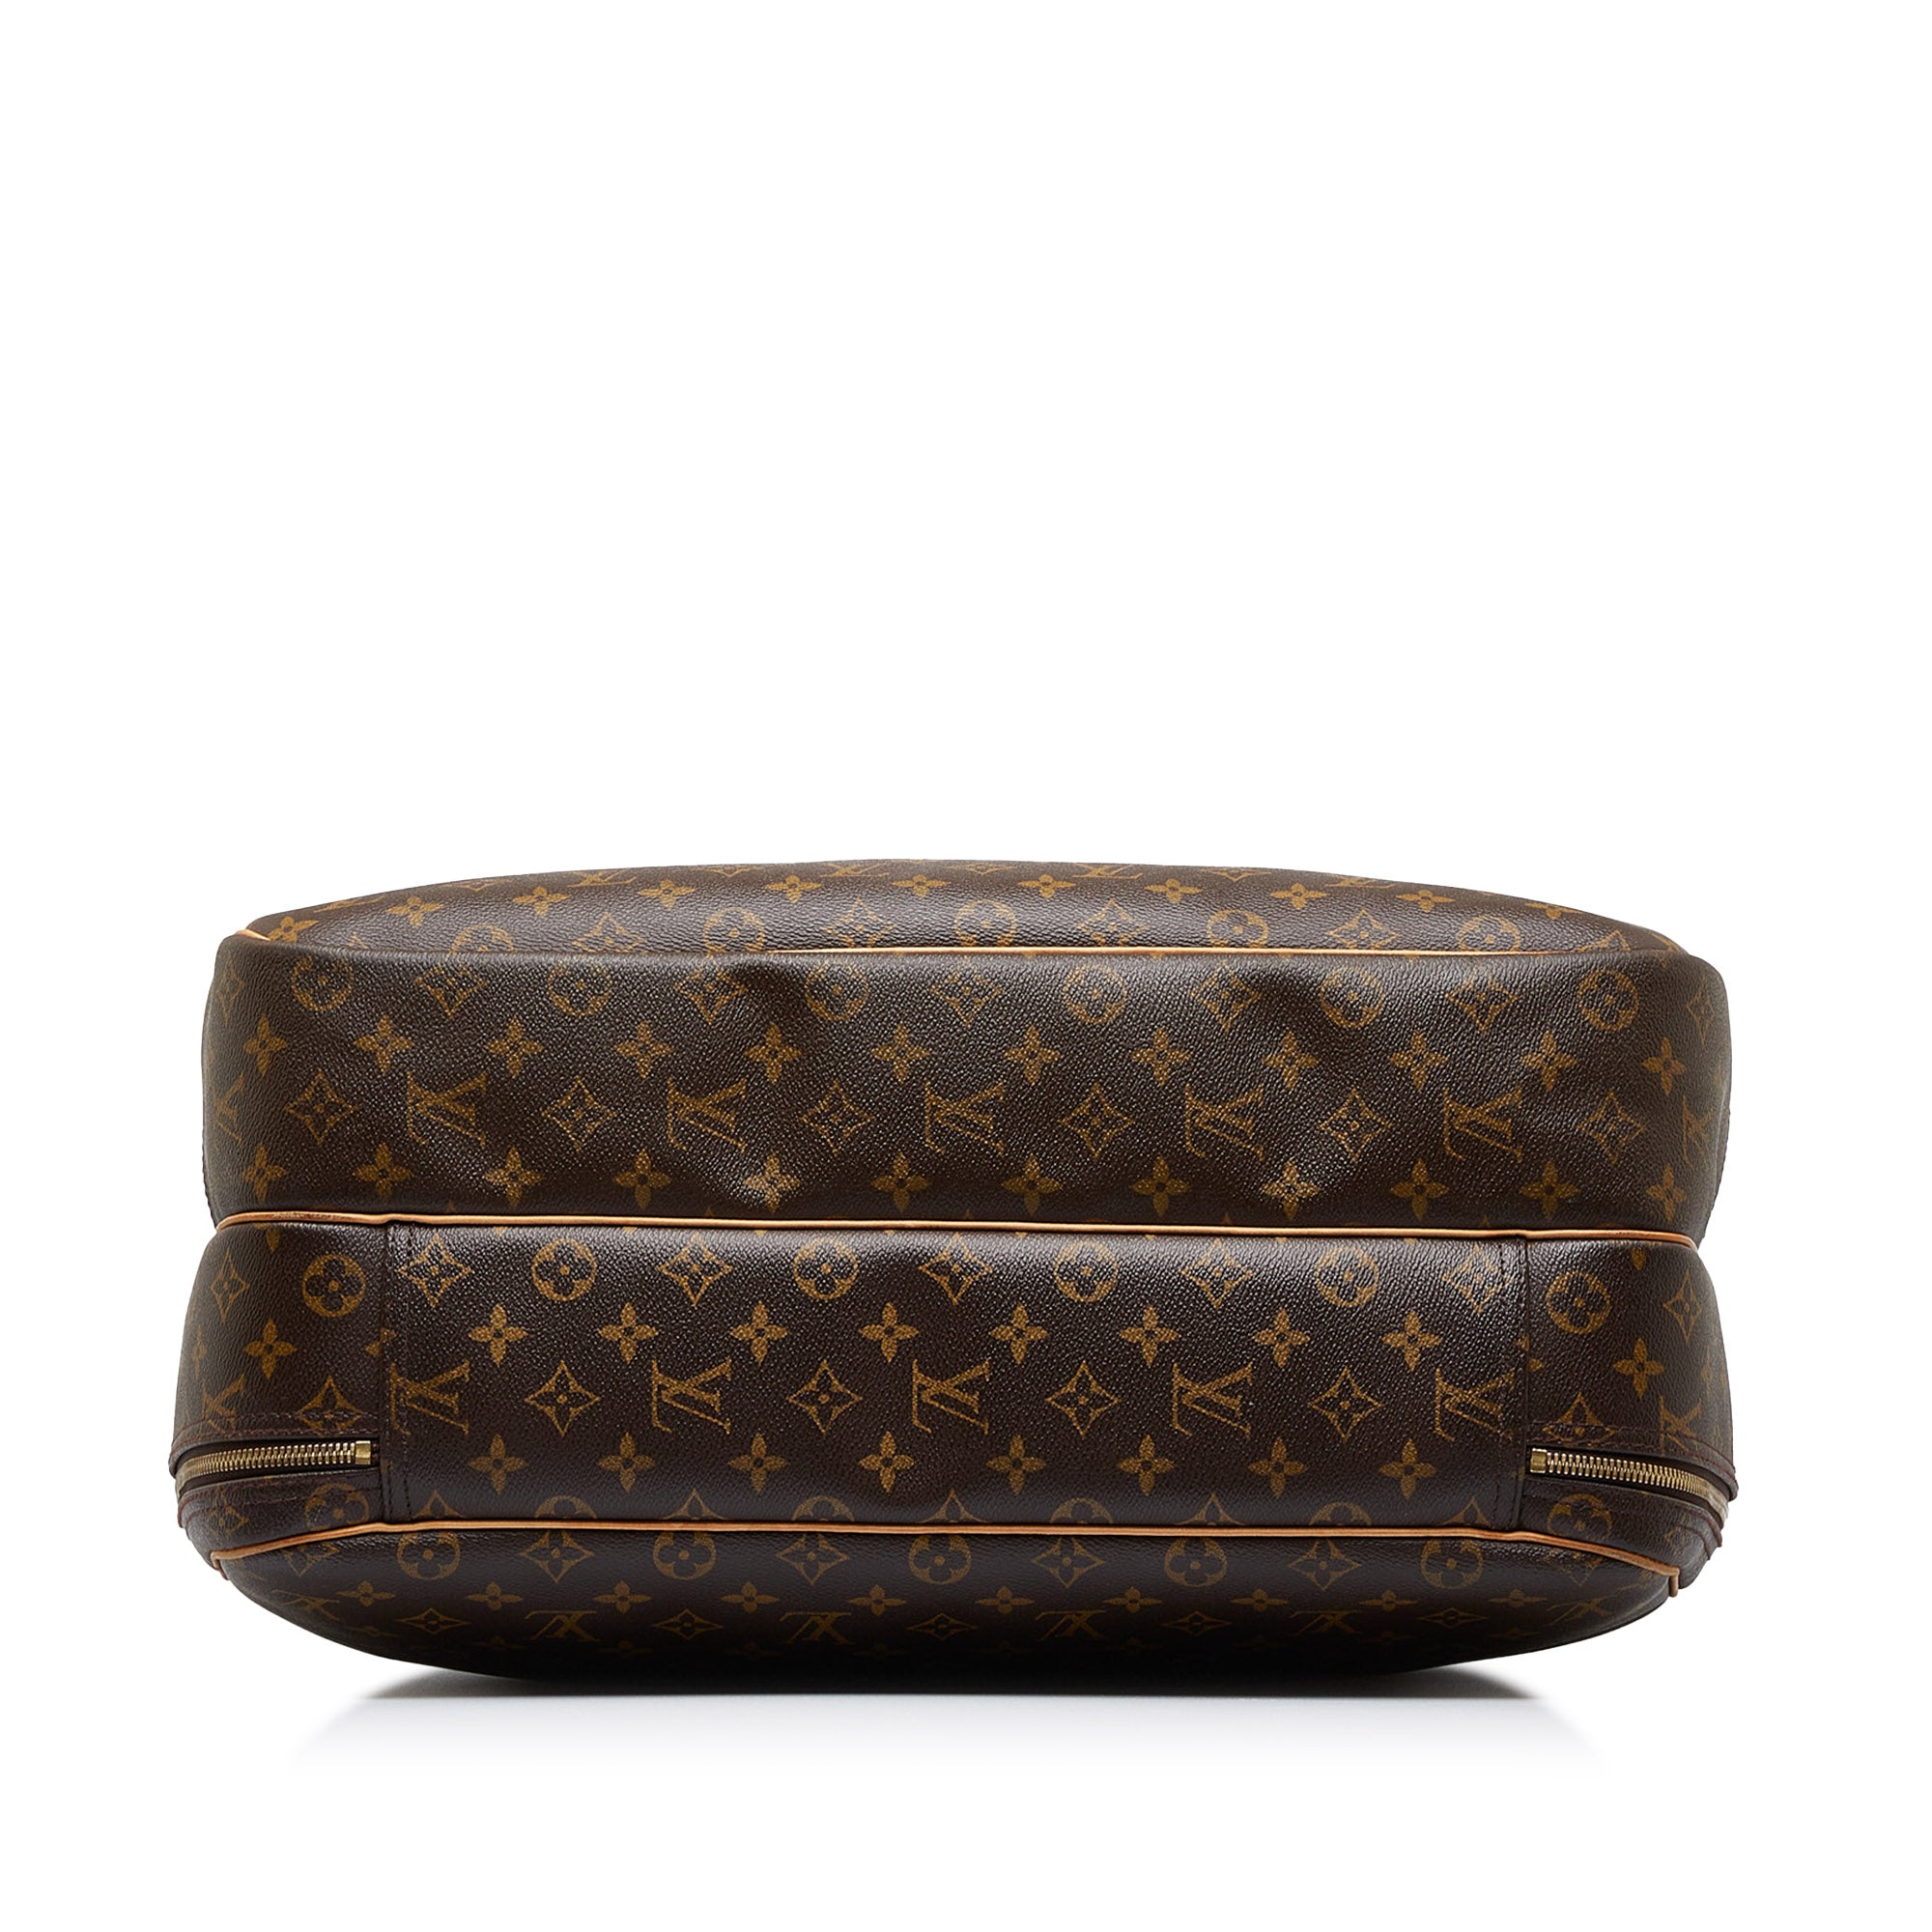 Louis Vuitton Alize Travel bag 358756